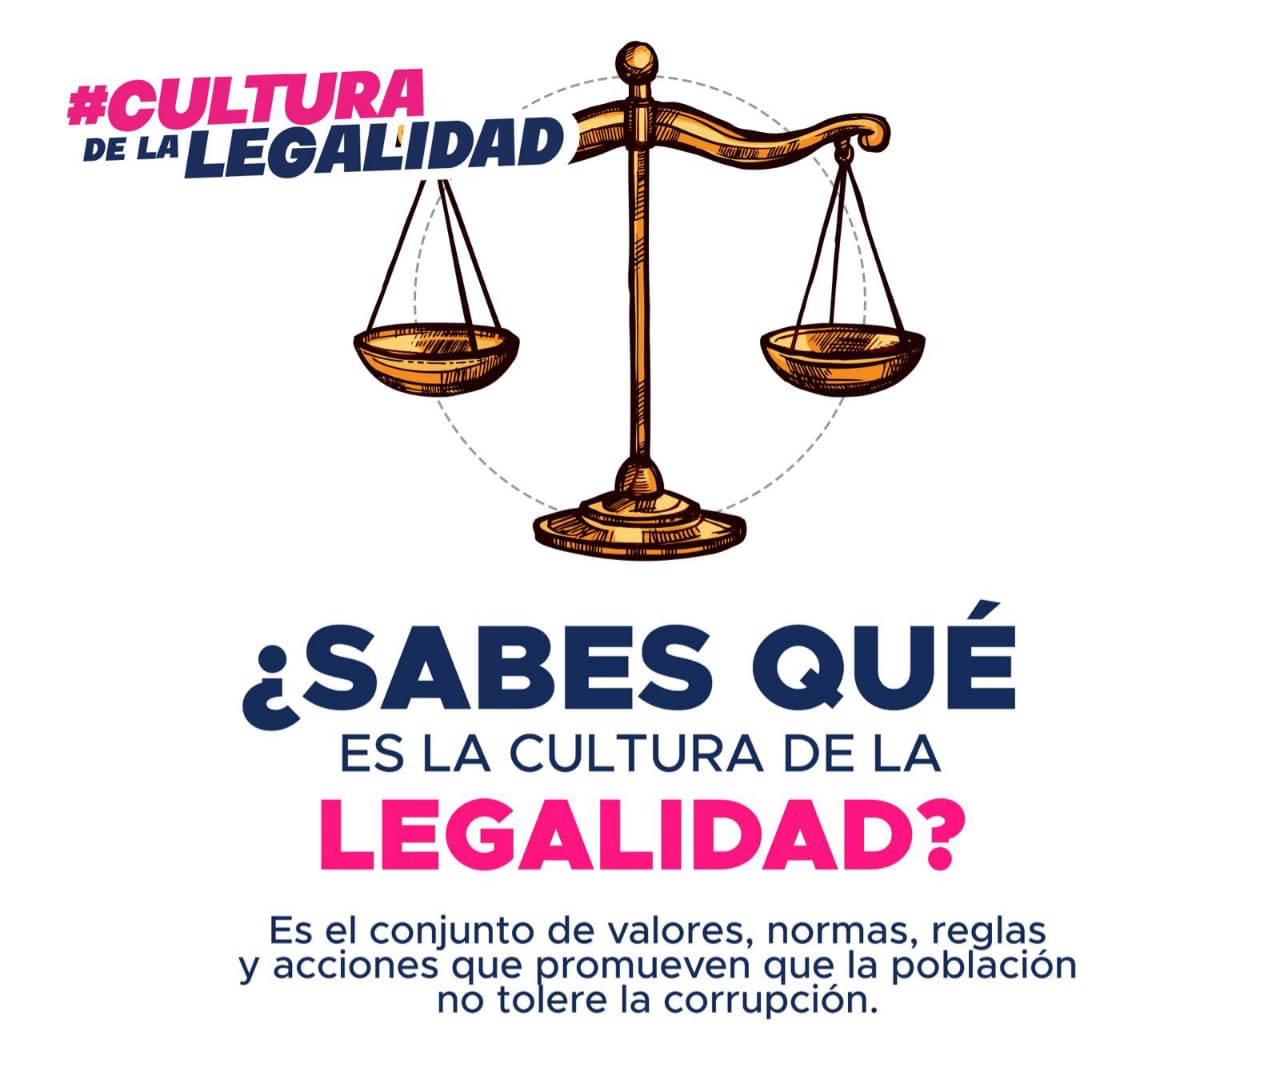  Ayuntamiento de Puebla lanza campaña denominada ‘Cultura de la Legalidad’ 